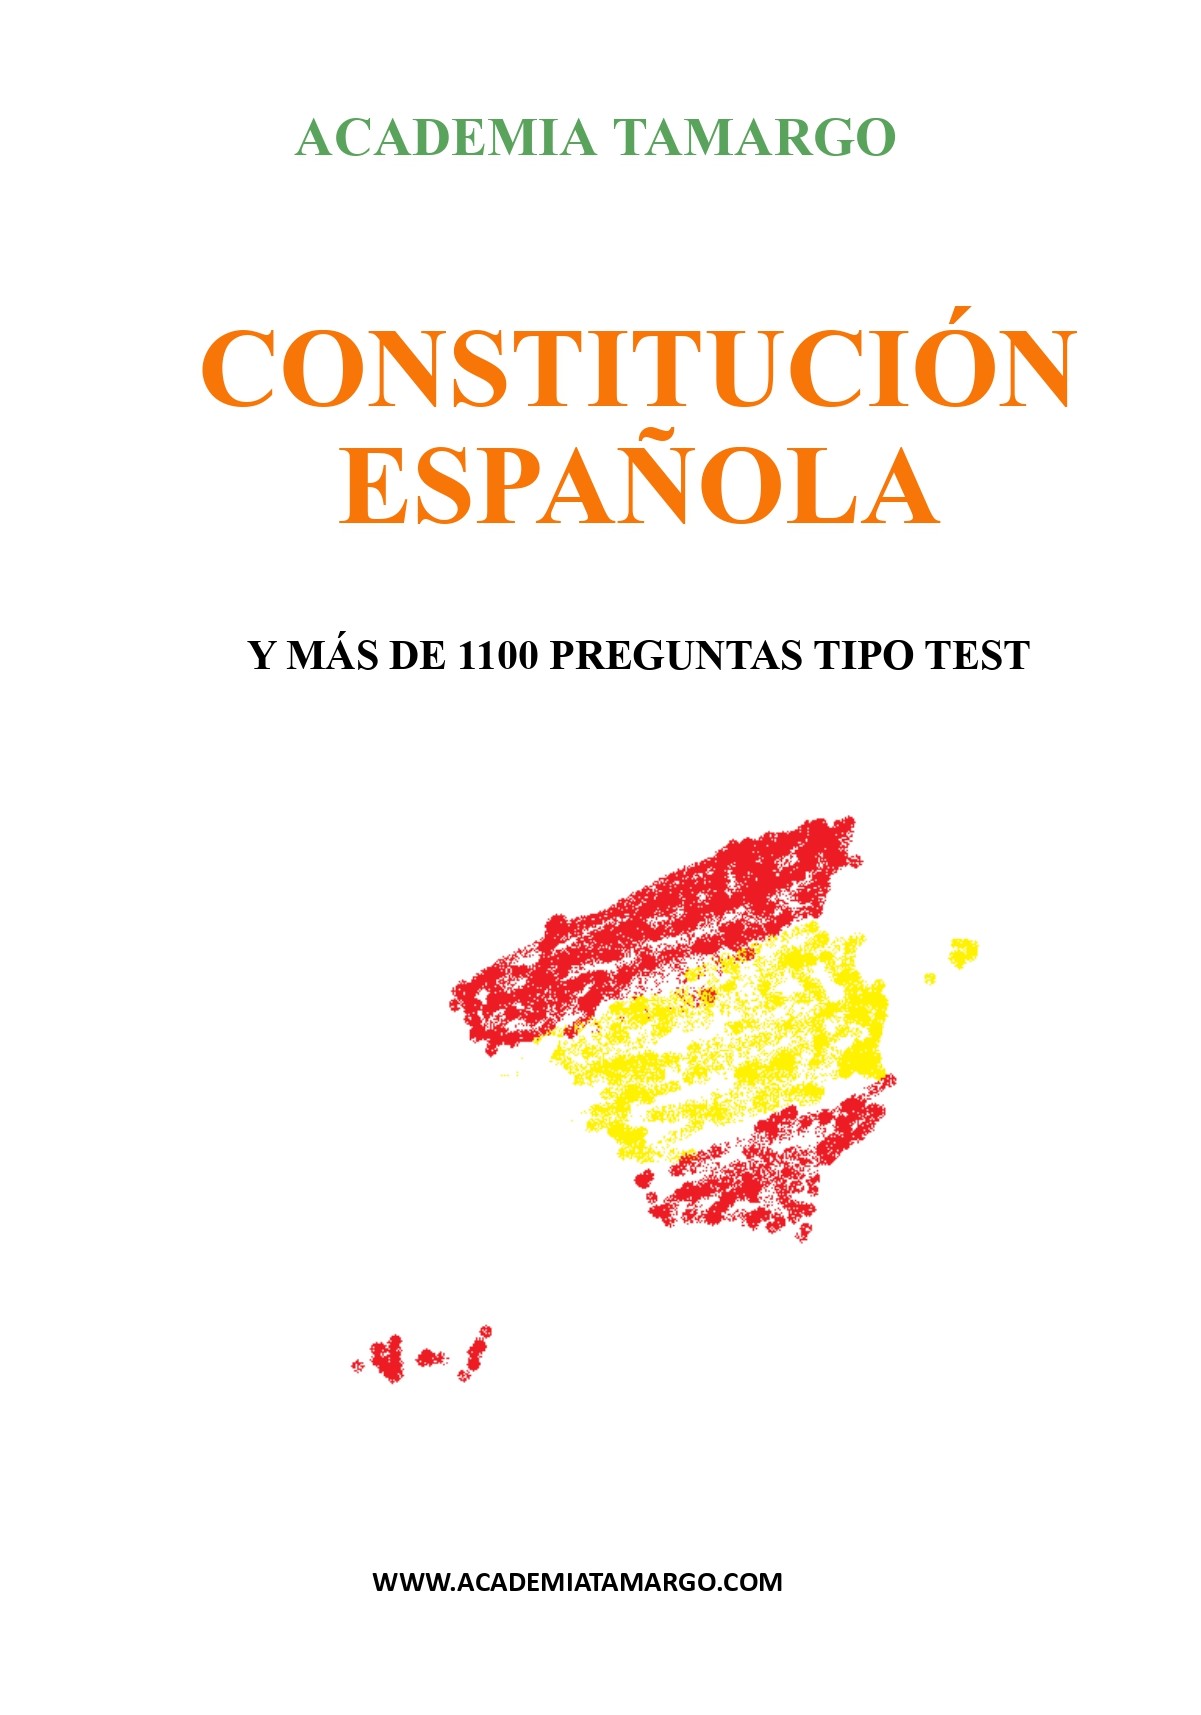 CONSTITUCIÓN ESPAÑOLA Y 1130 PREGUNTAS PORTADA_page-0001